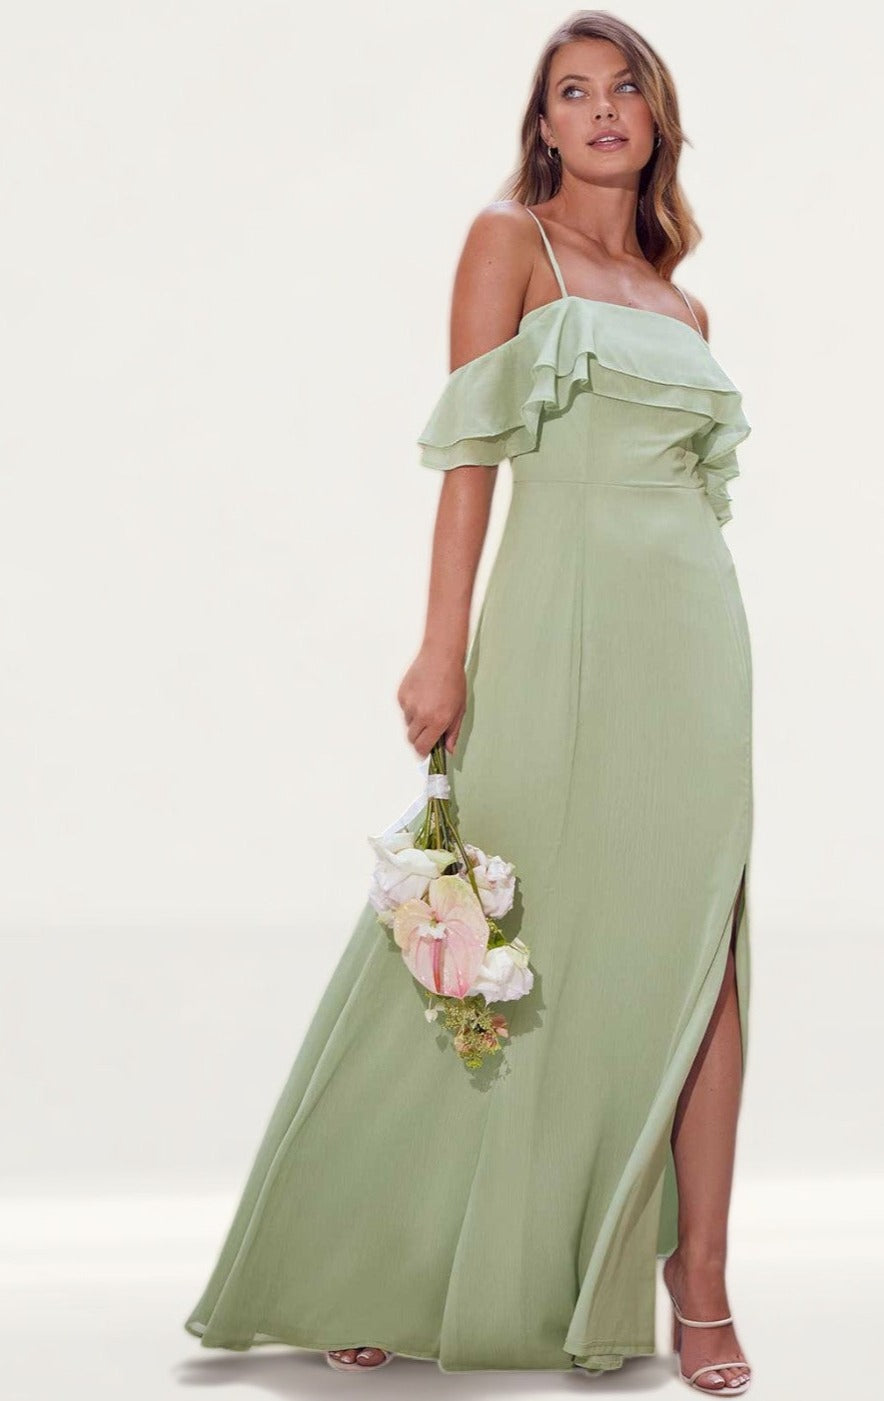 Lipsy Green Cold Shoulder Bridesmaid Maxi Dress product image